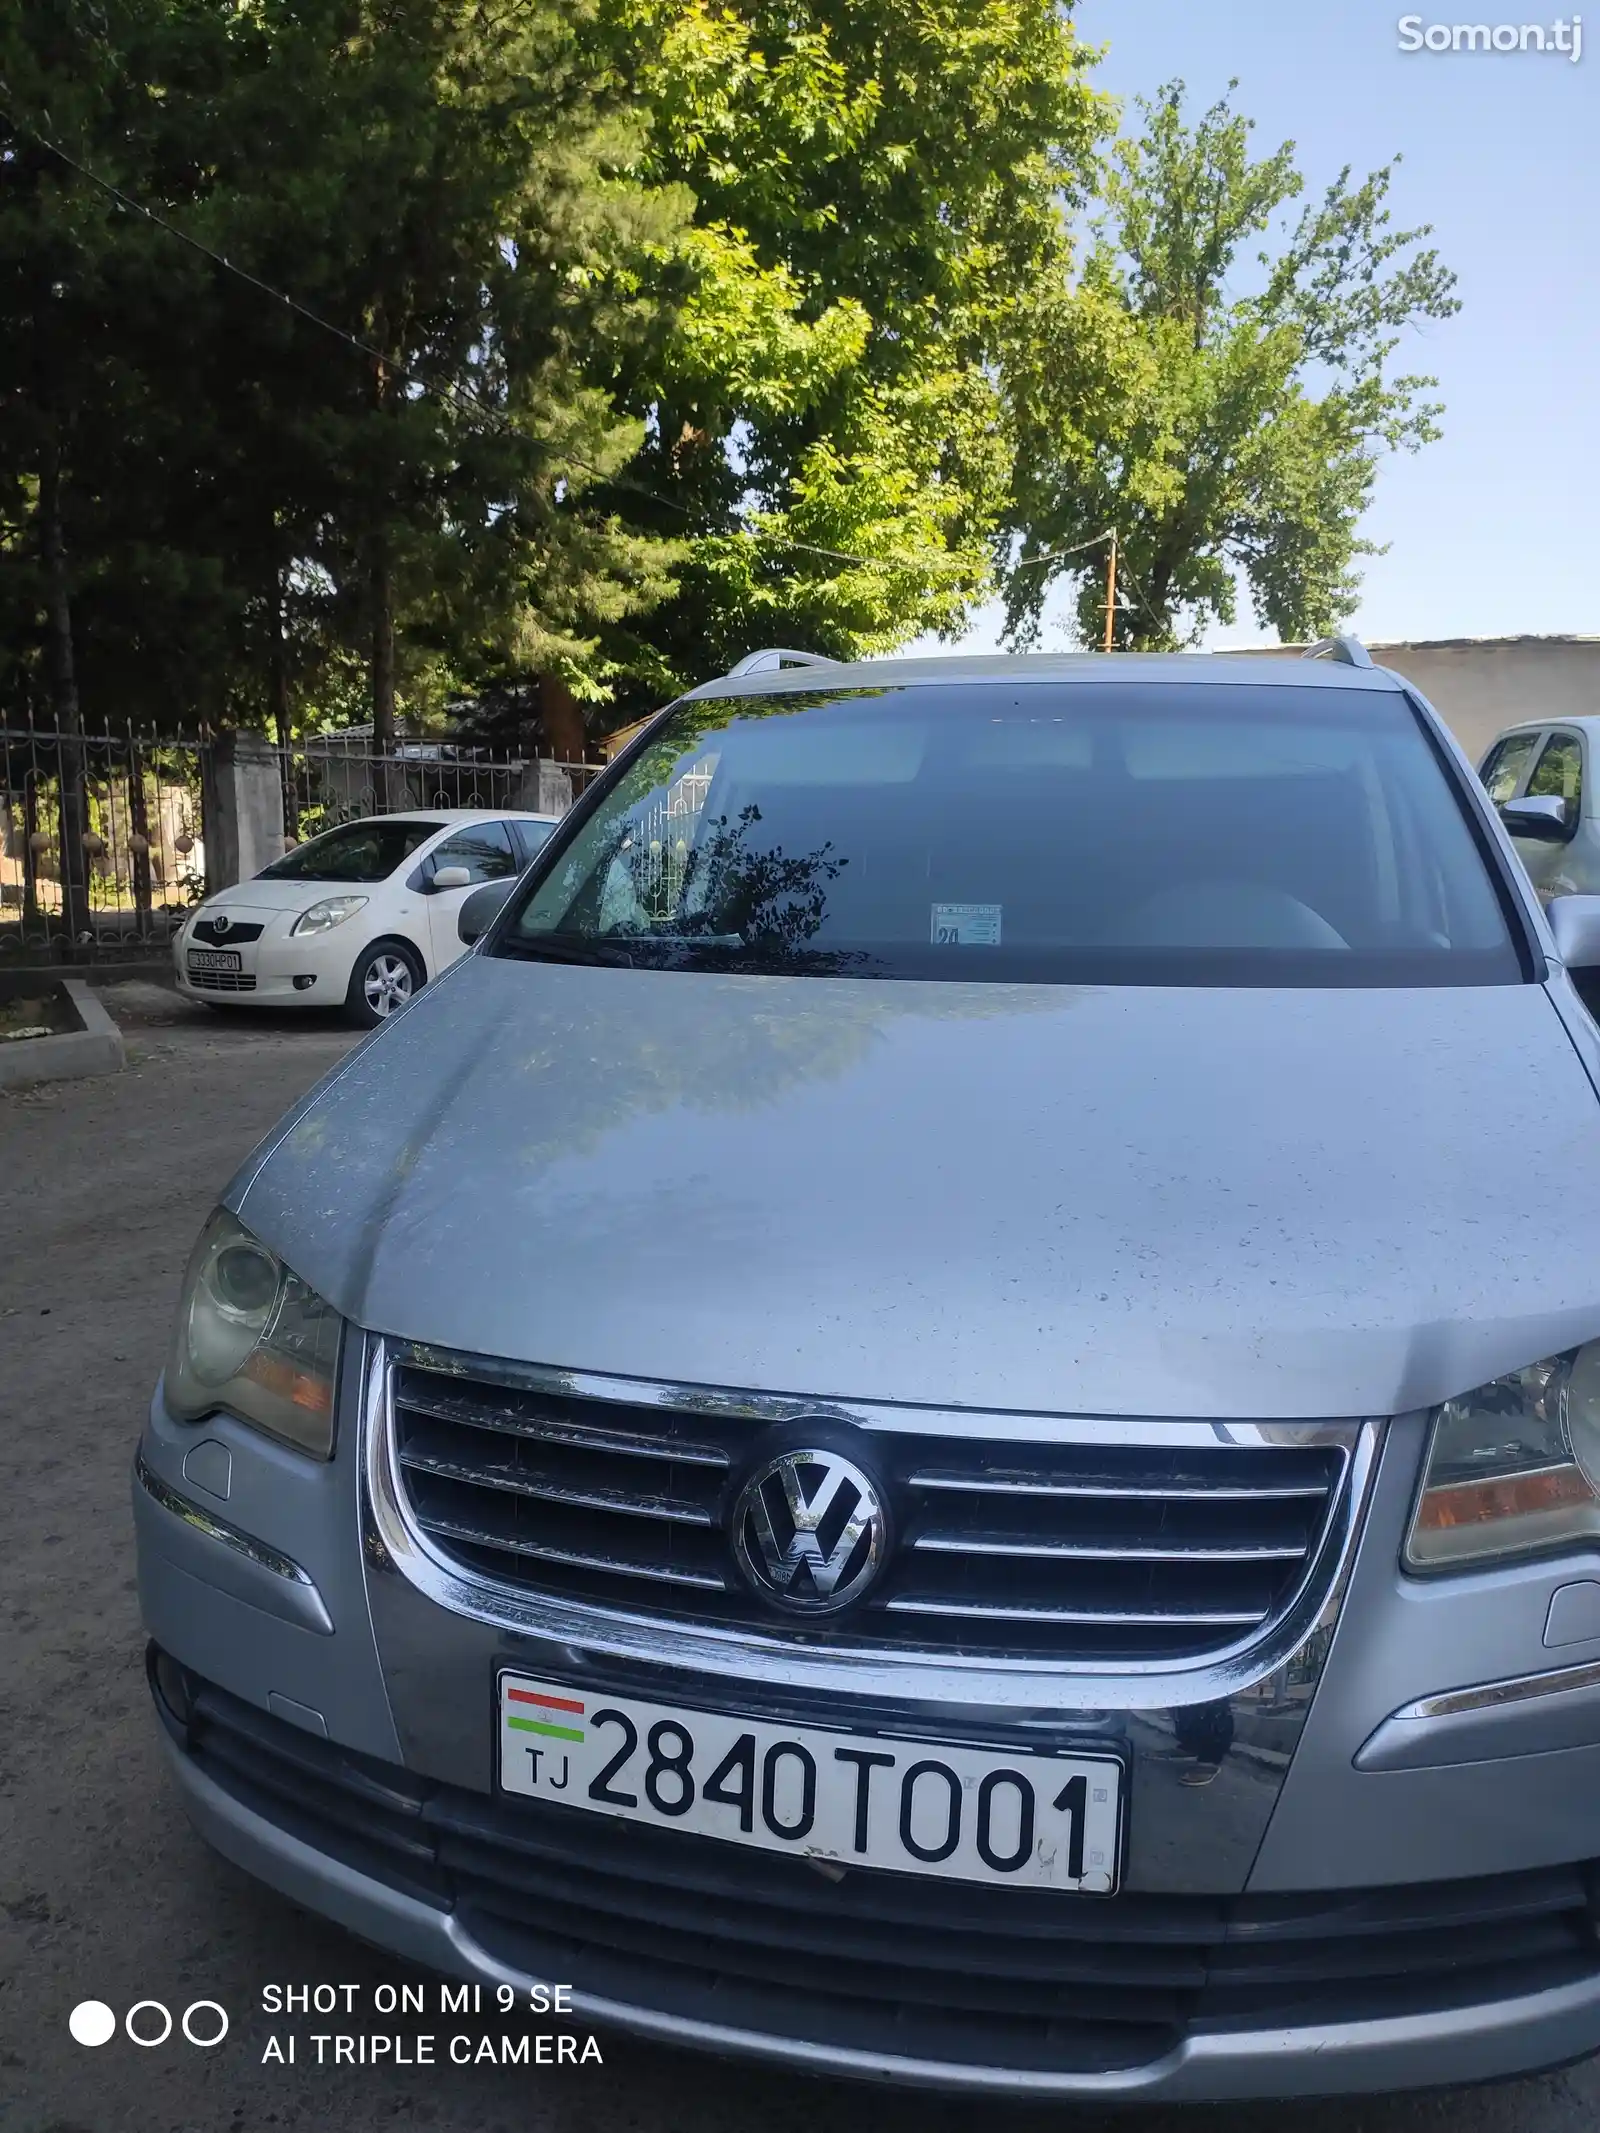 Volkswagen Touran, 2007-1